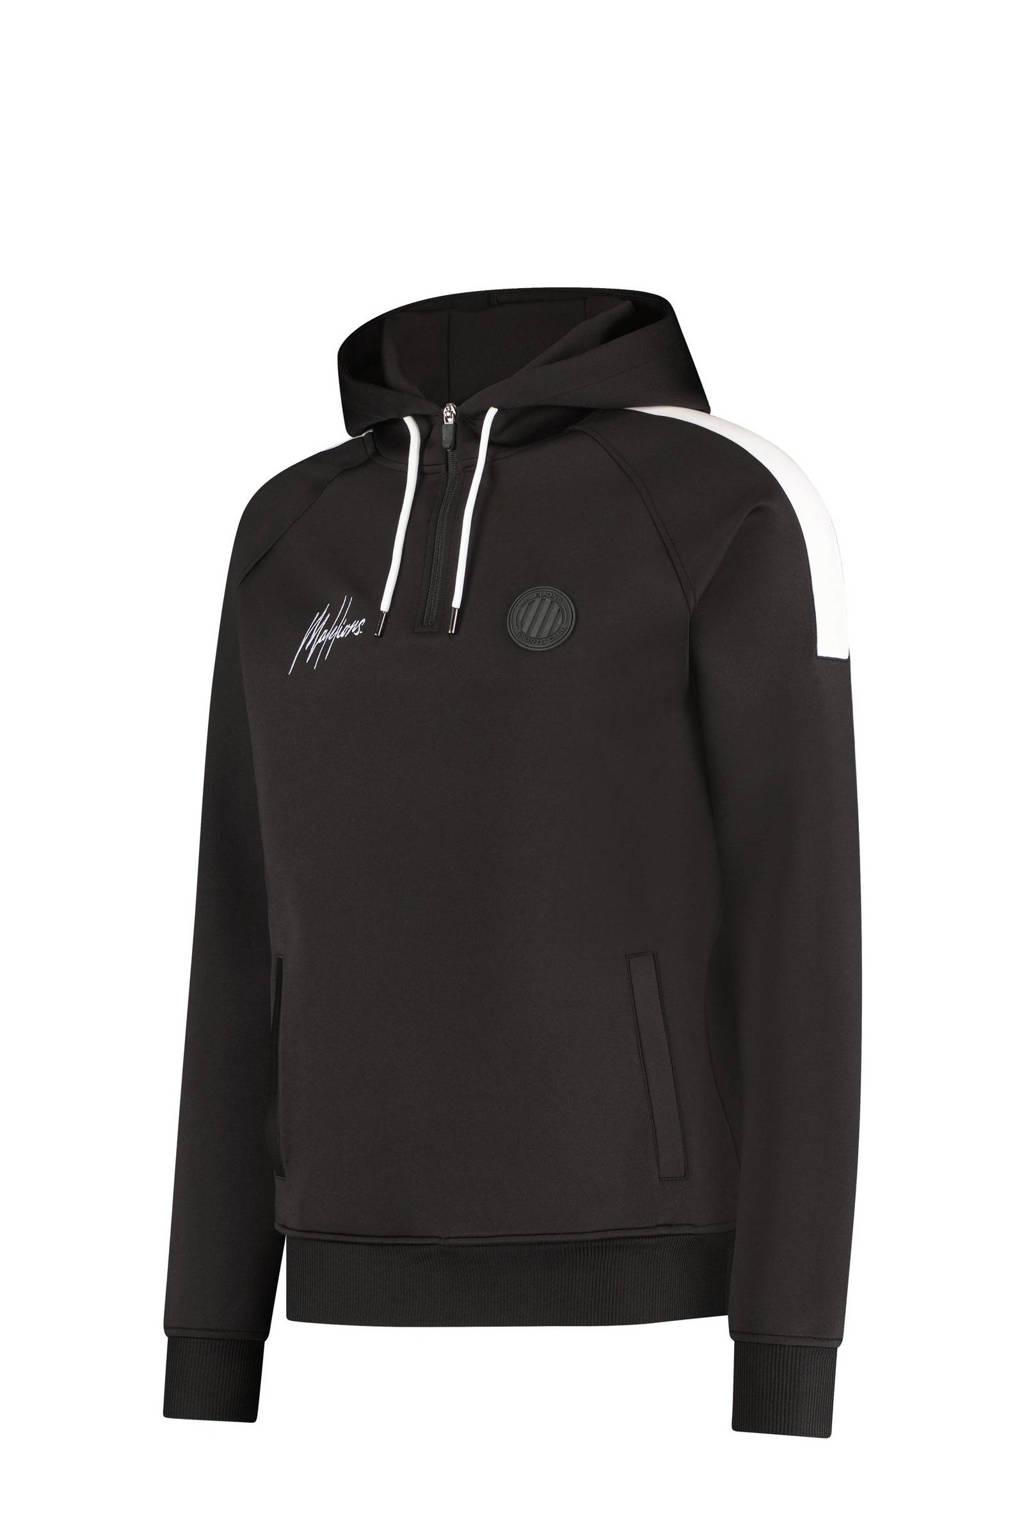 Malelions hoodie Hoodie Striker met logo zwart/wit, Zwart/wit